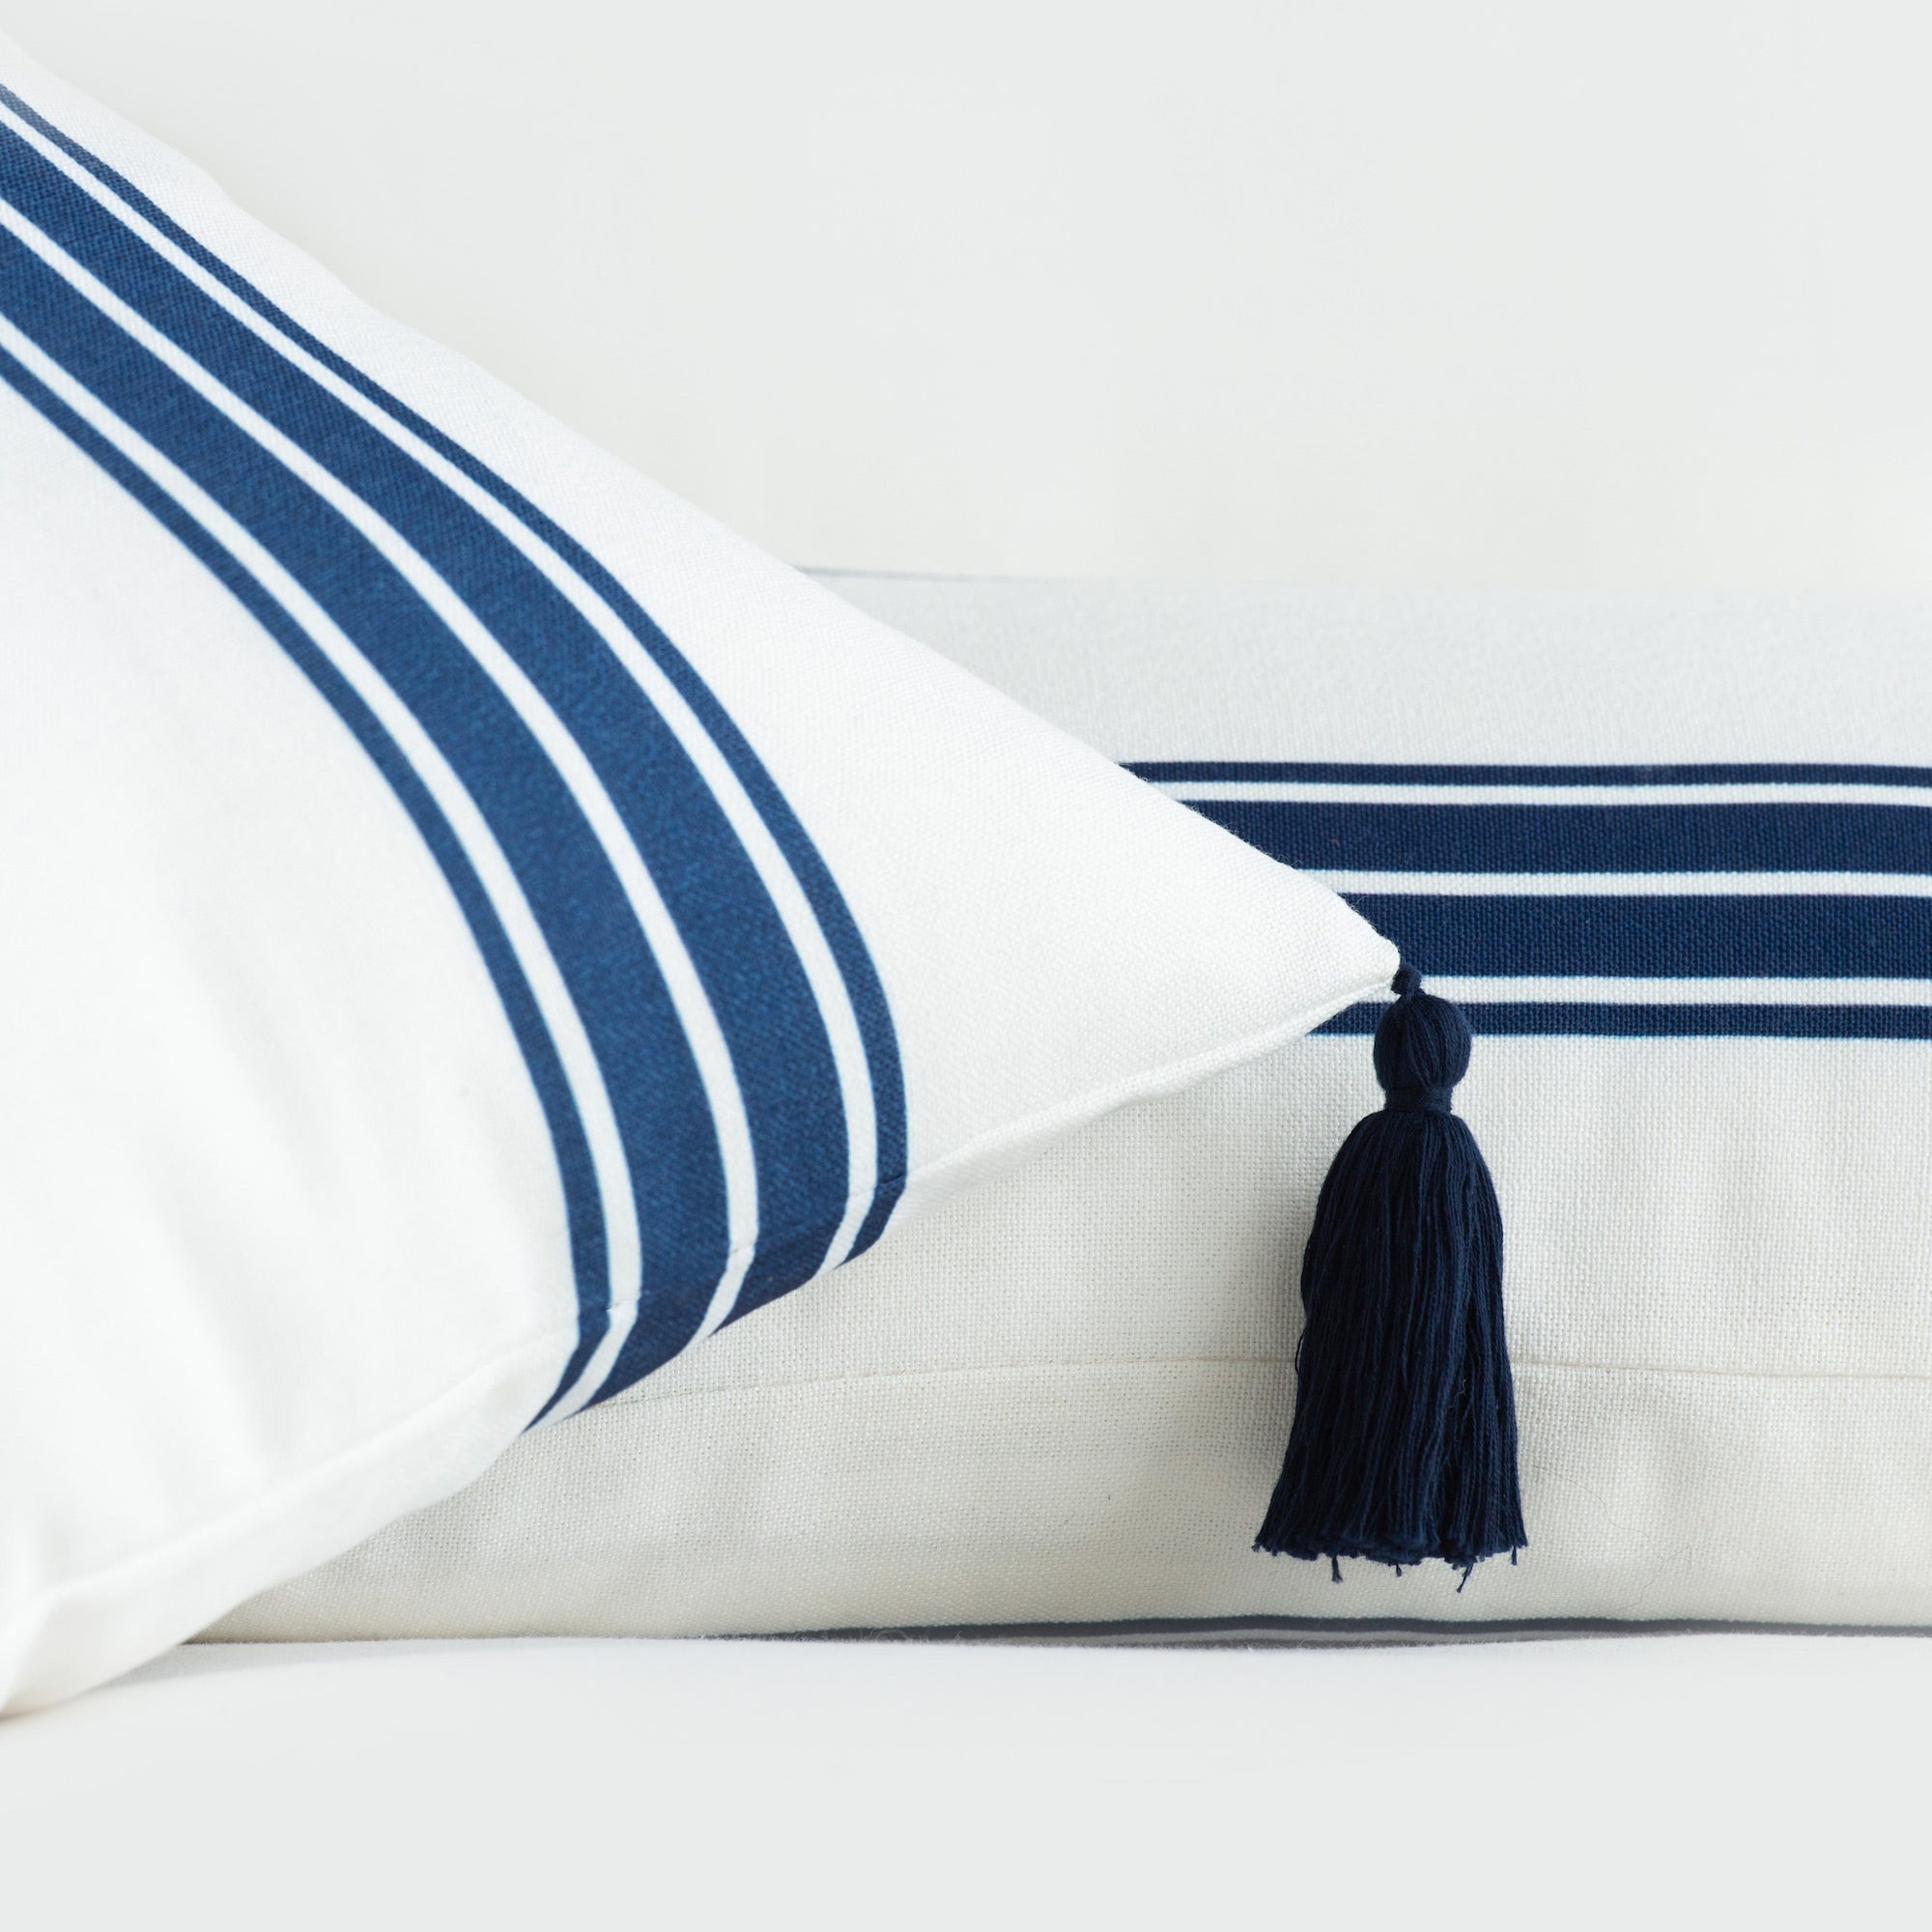 Coastal Indoor Outdoor Pillow Cover, Aviv, Striped Tassel, Navy Blue, 20"x20"